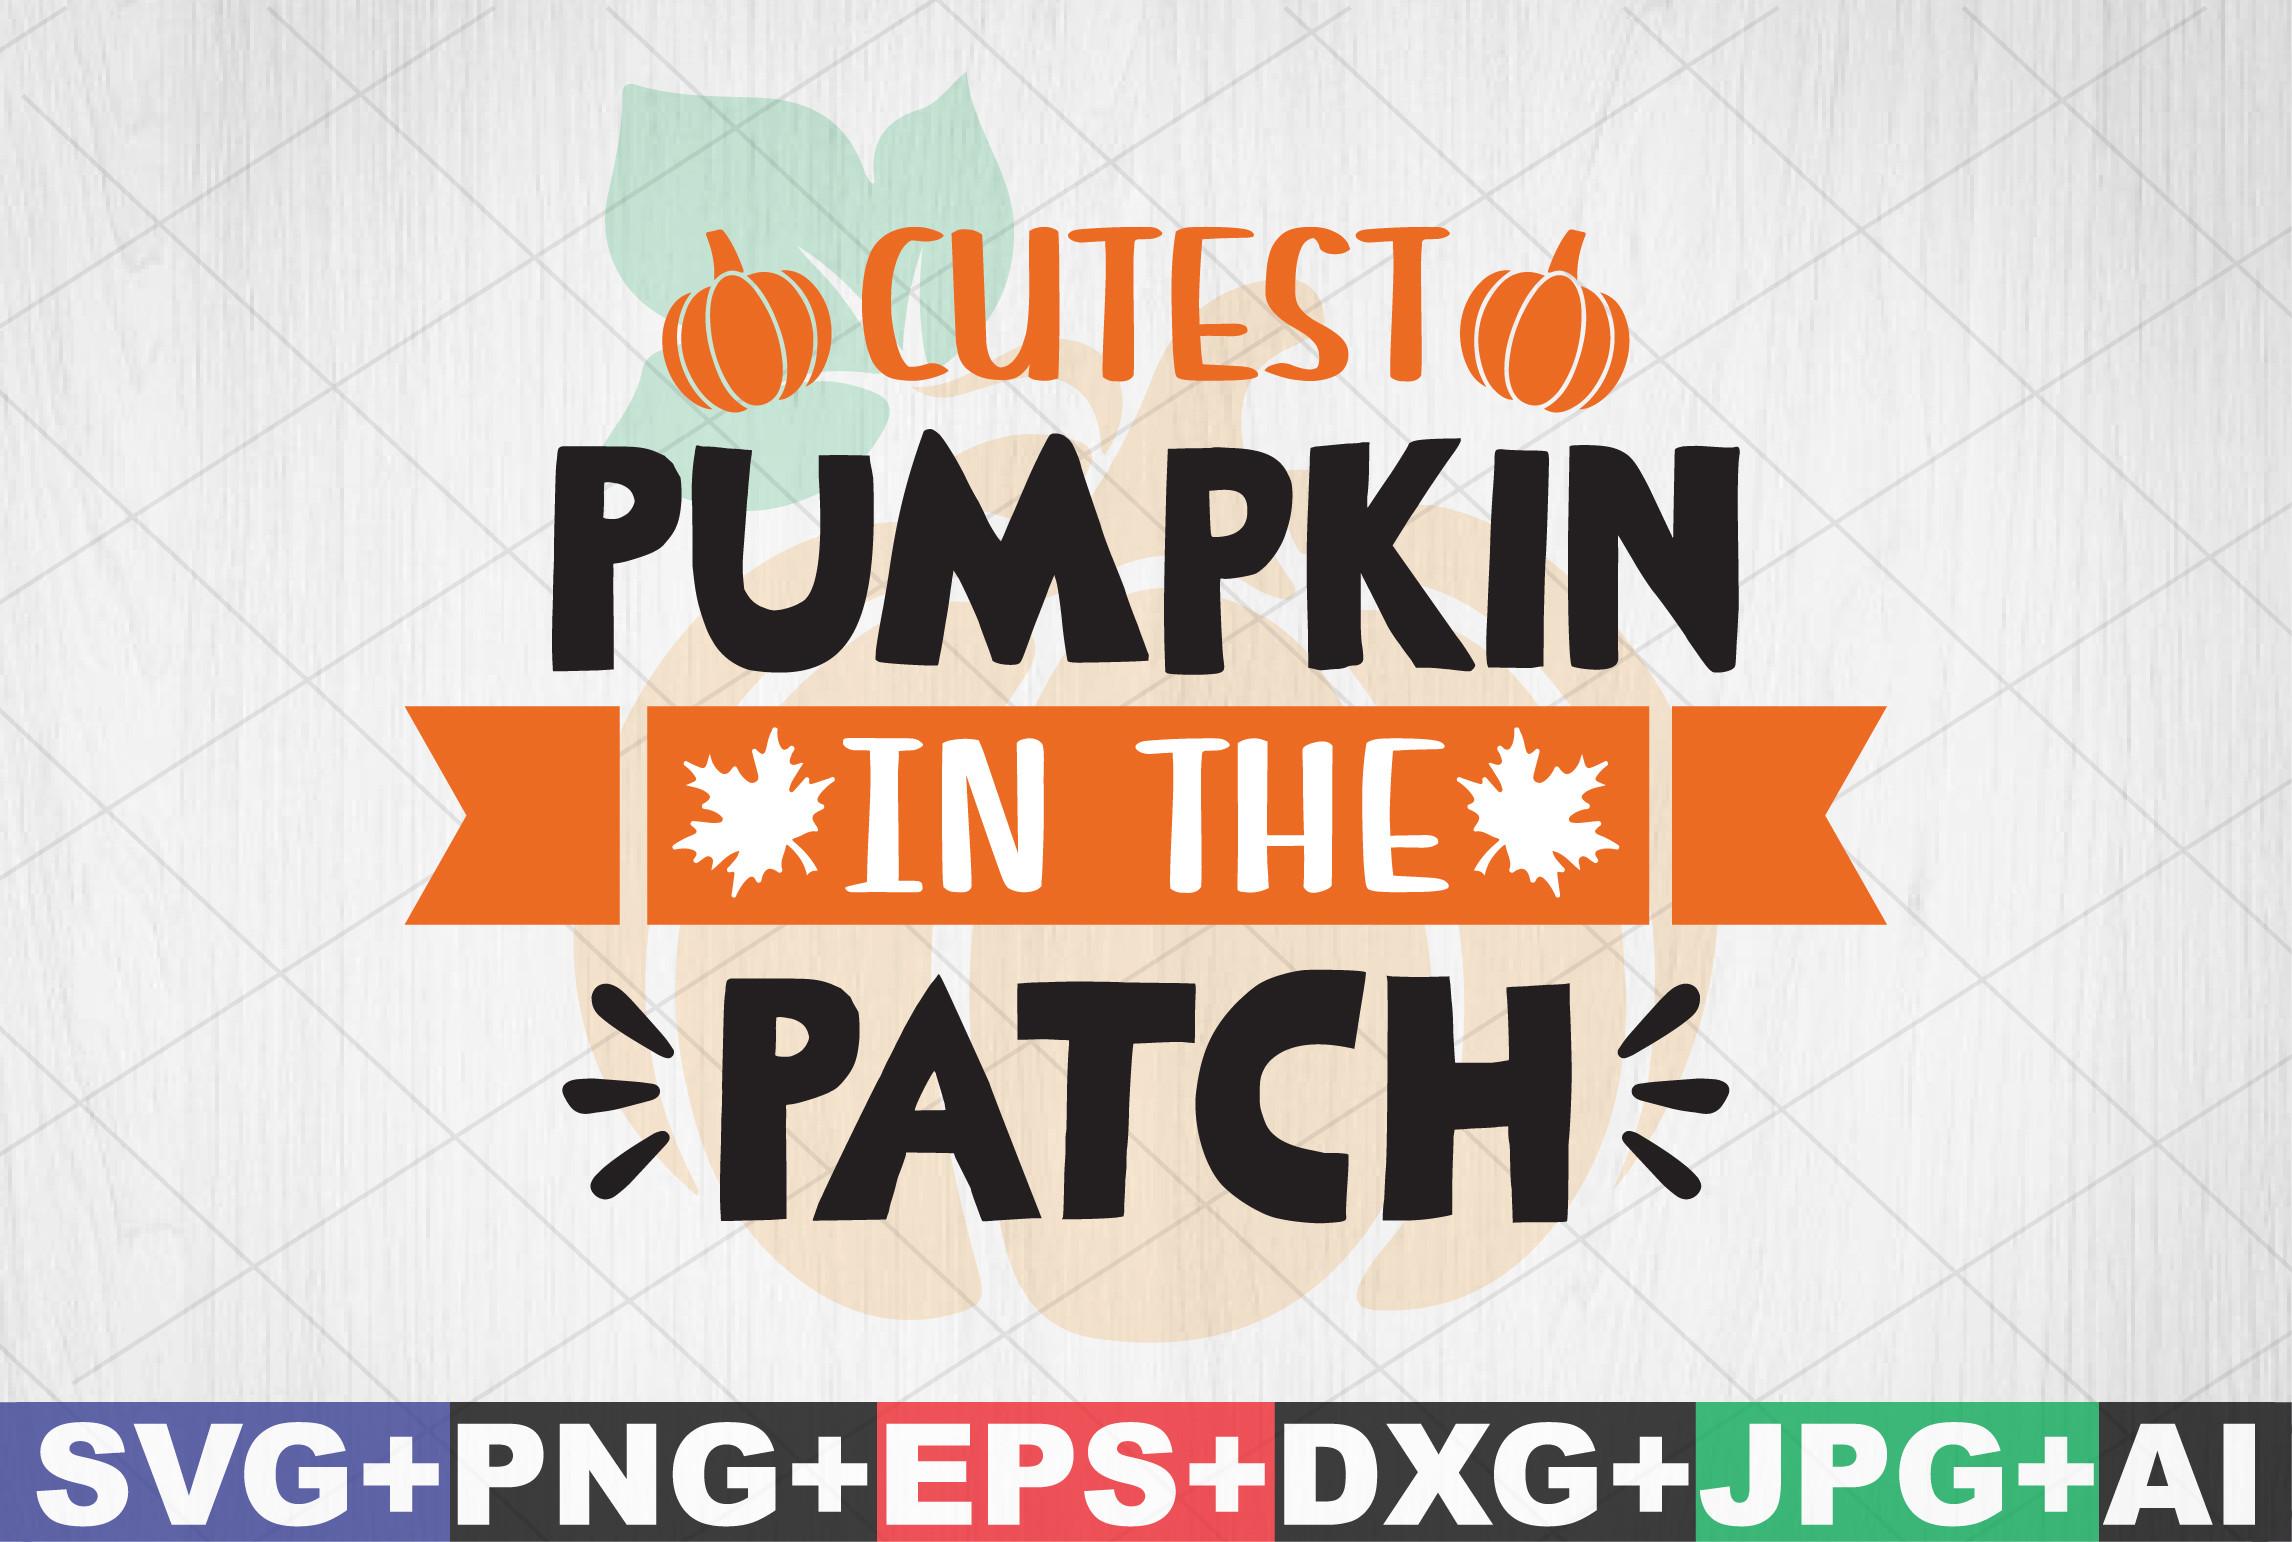 Cutest Pumpkin in the Patch